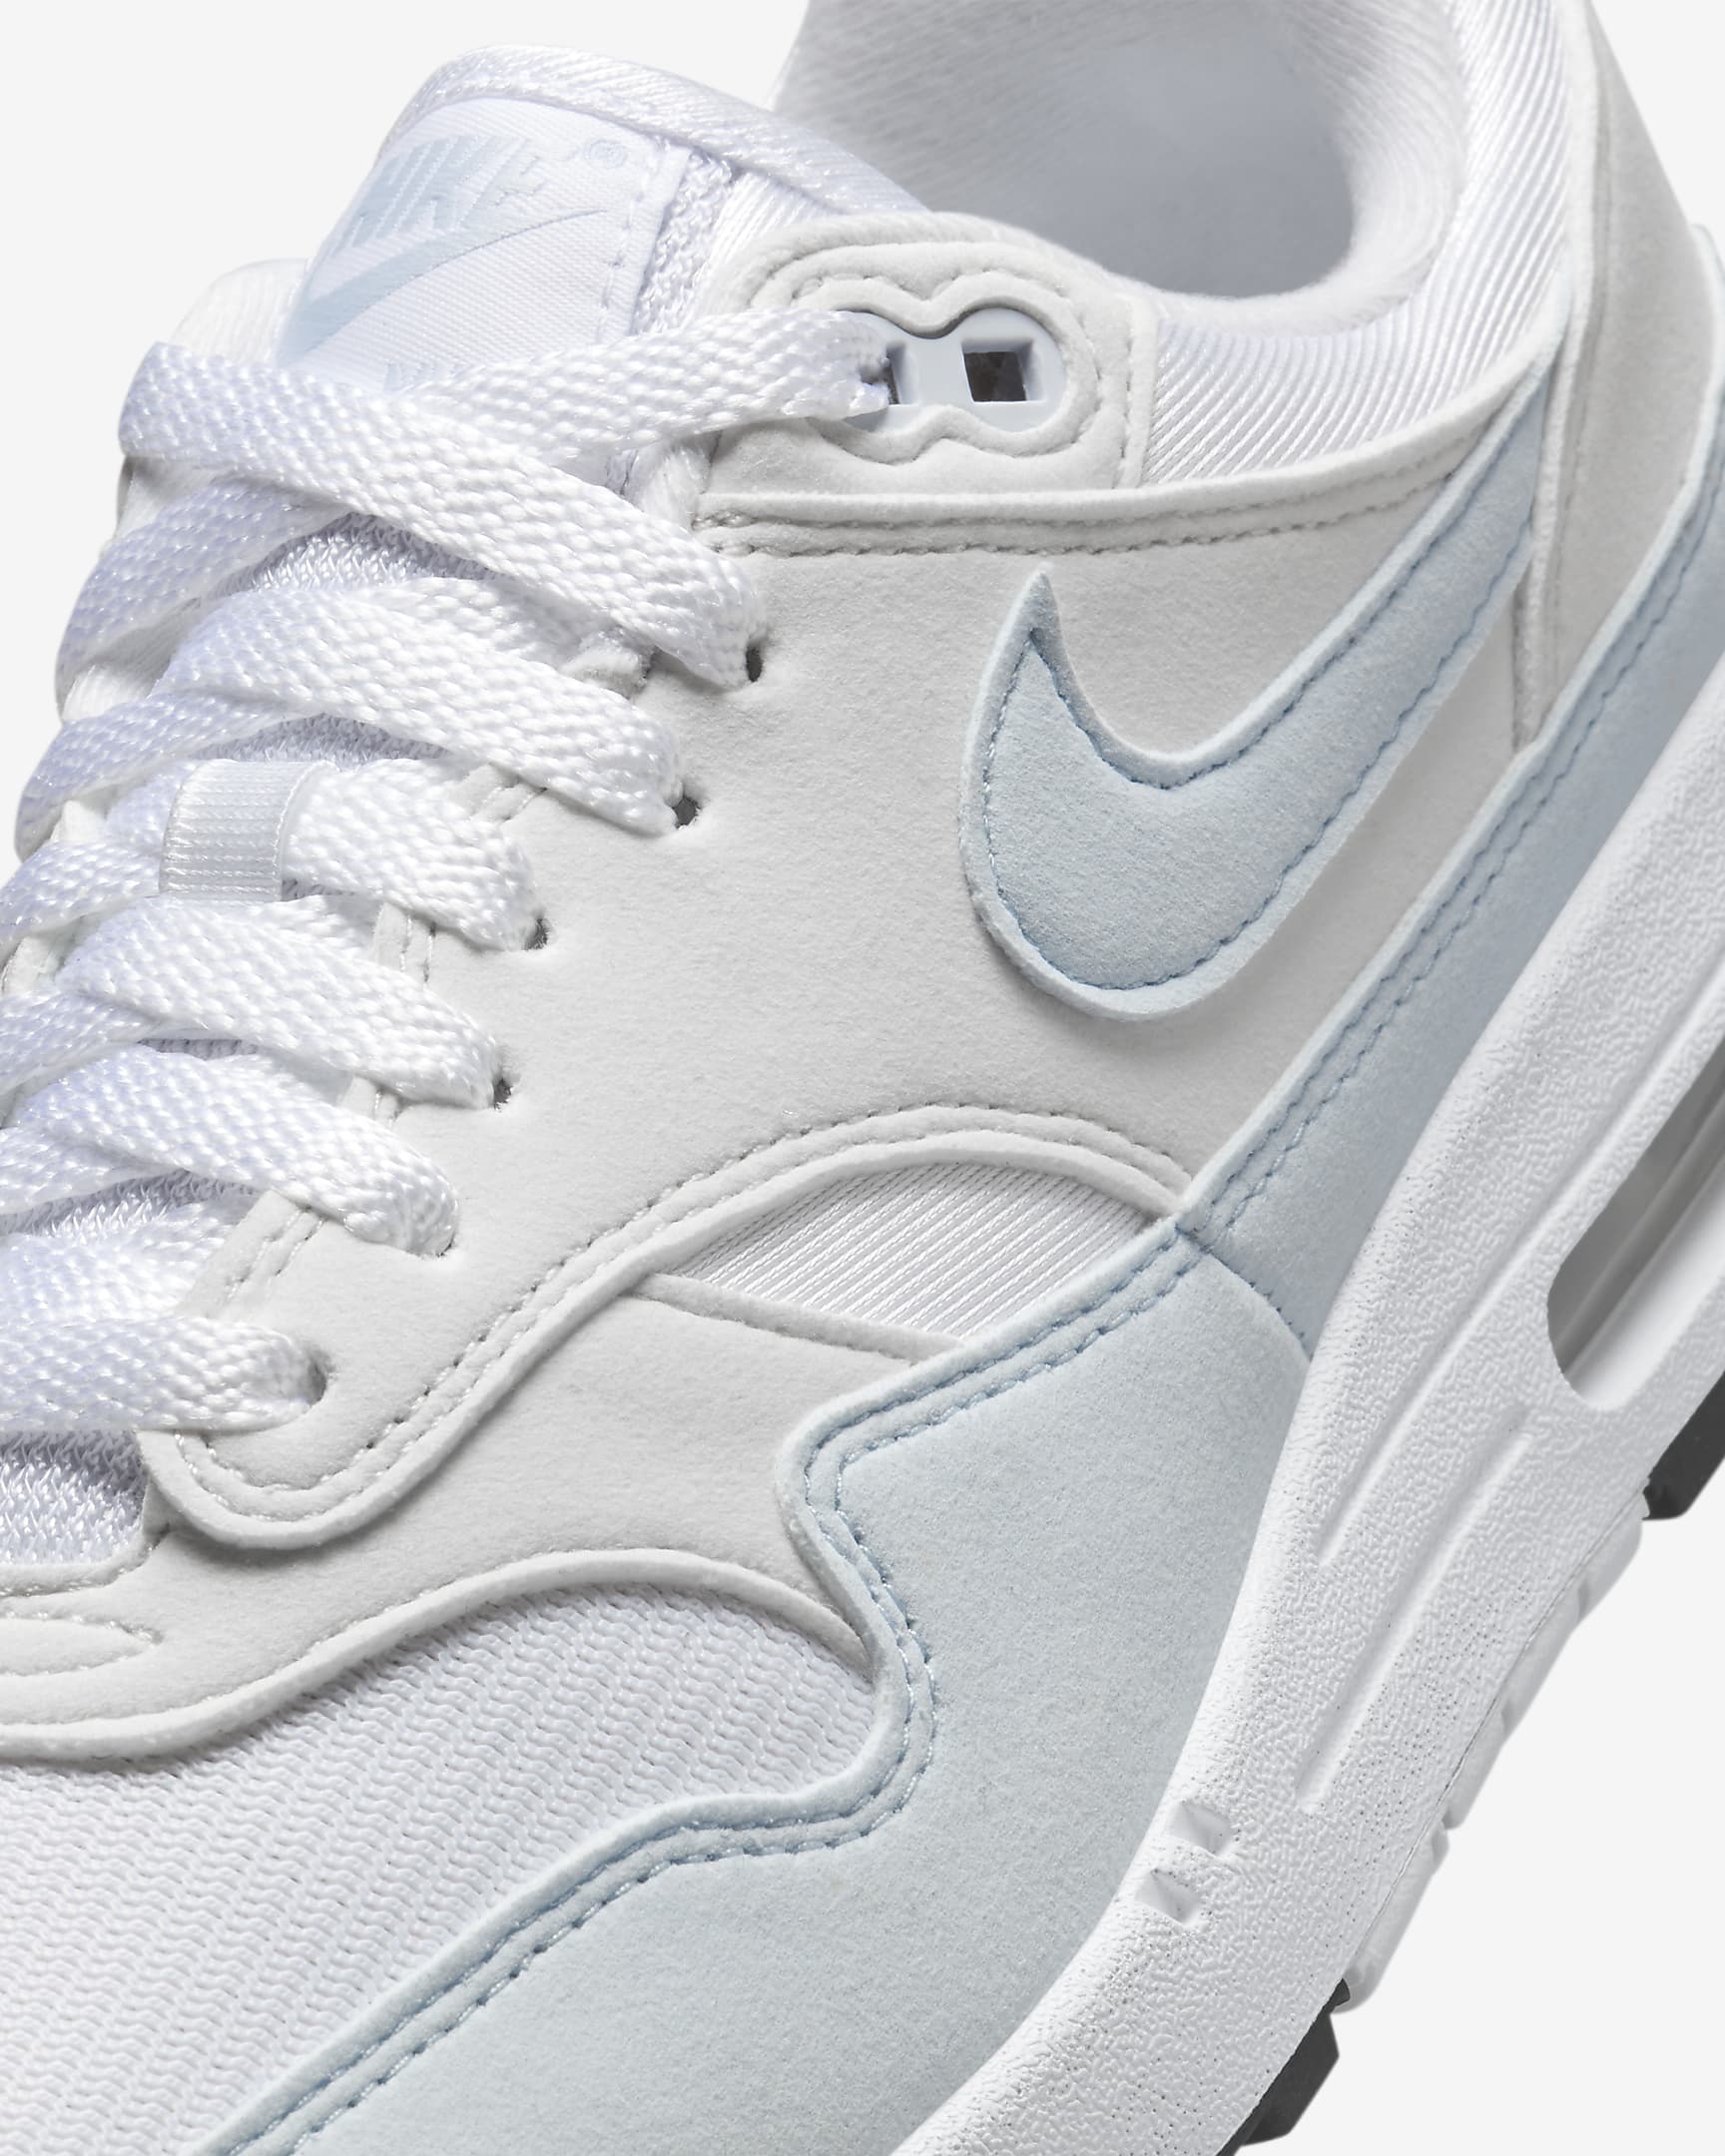 Chaussure Nike Air Max 1 pour femme - Blanc/Platinum Tint/Noir/Football Grey